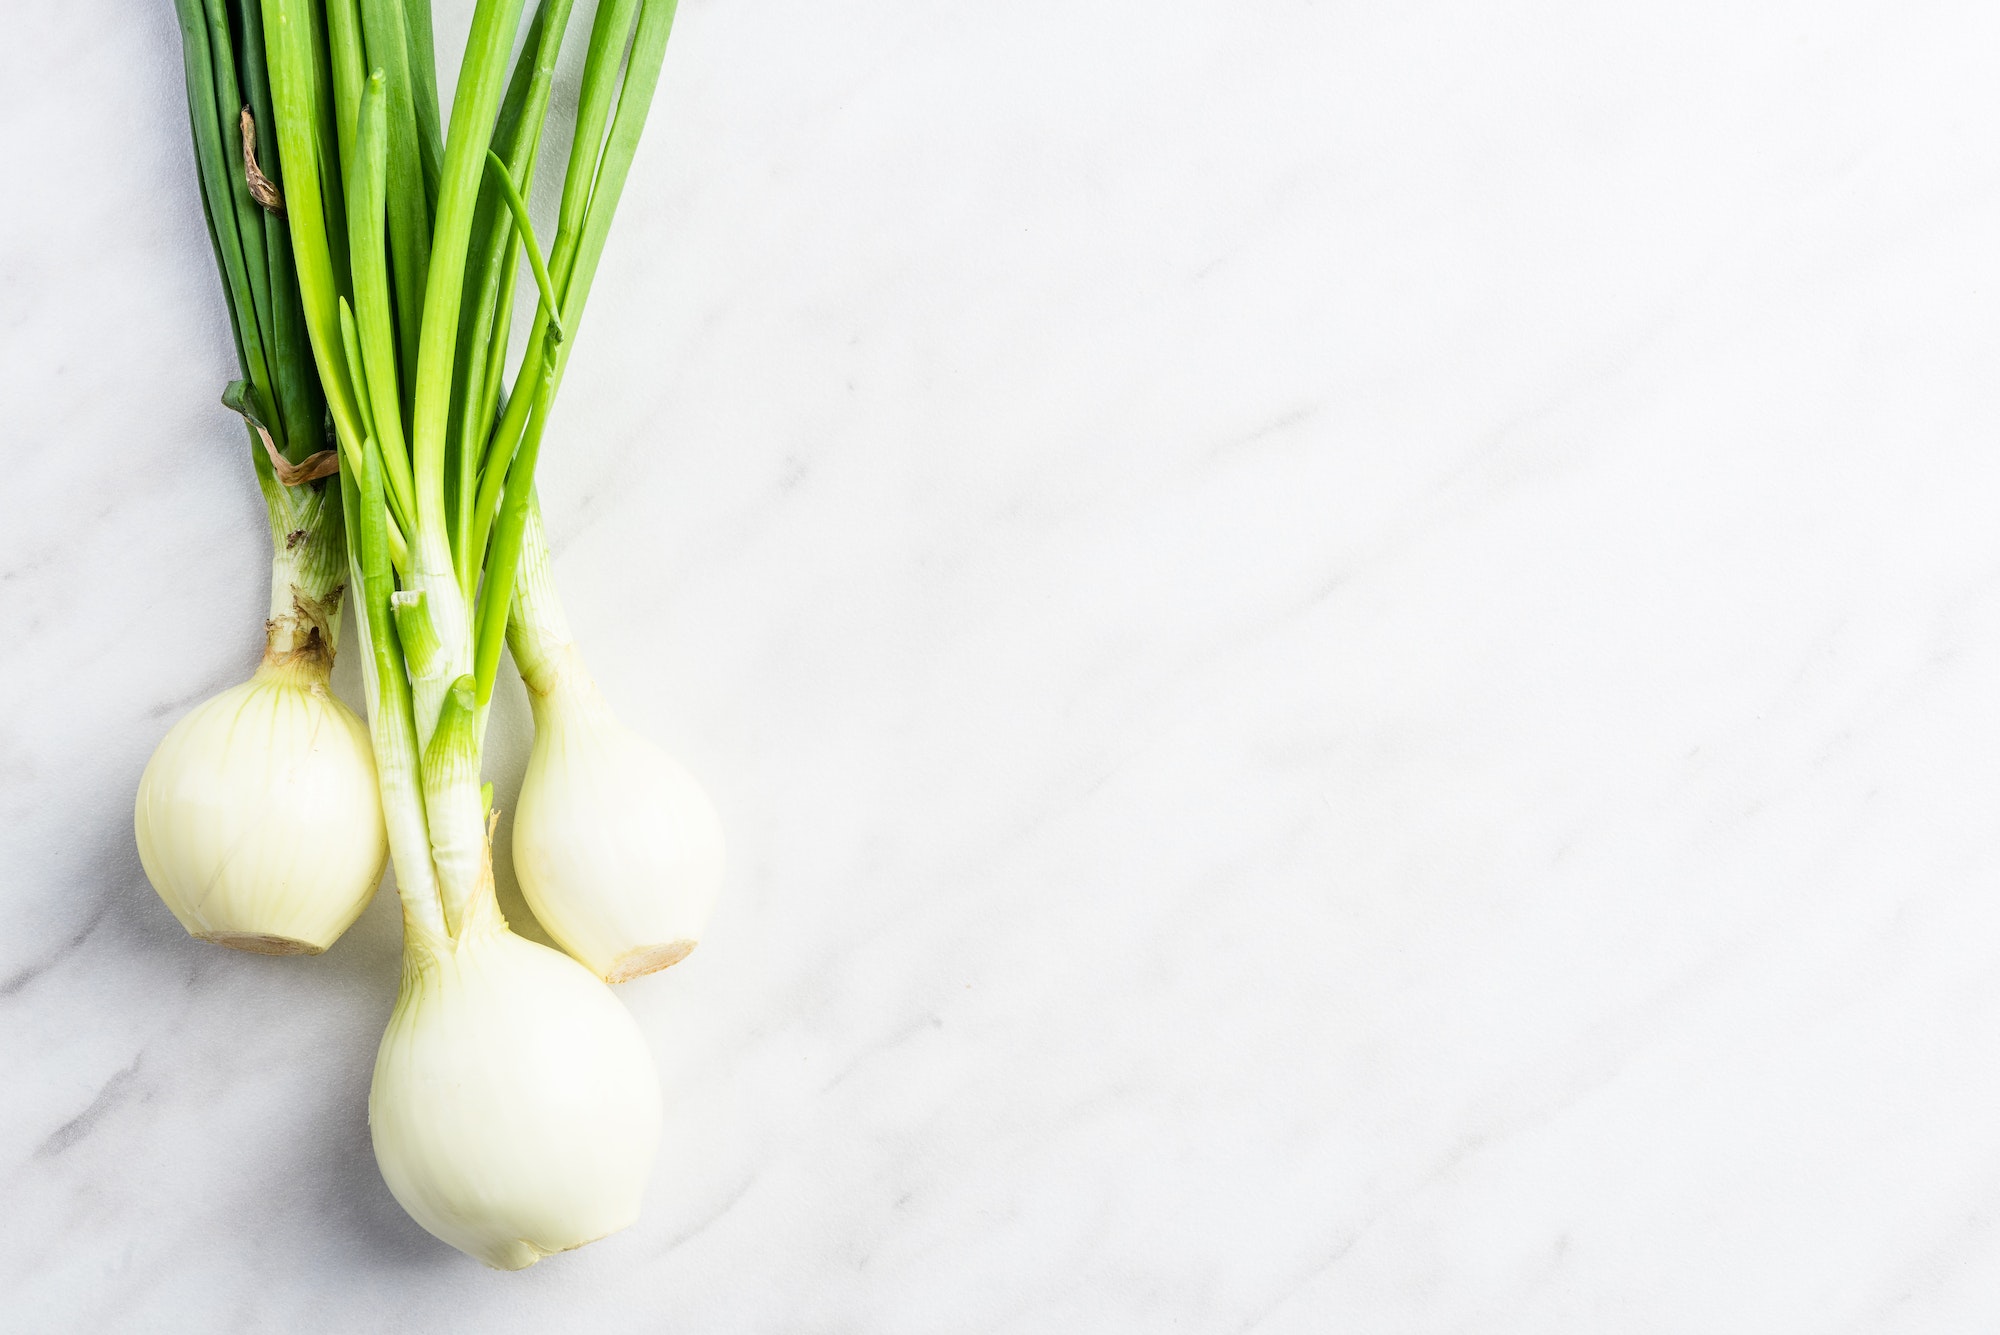 Lee más sobre el artículo Cebolleta fresca: el vegetal versátil y nutritivo